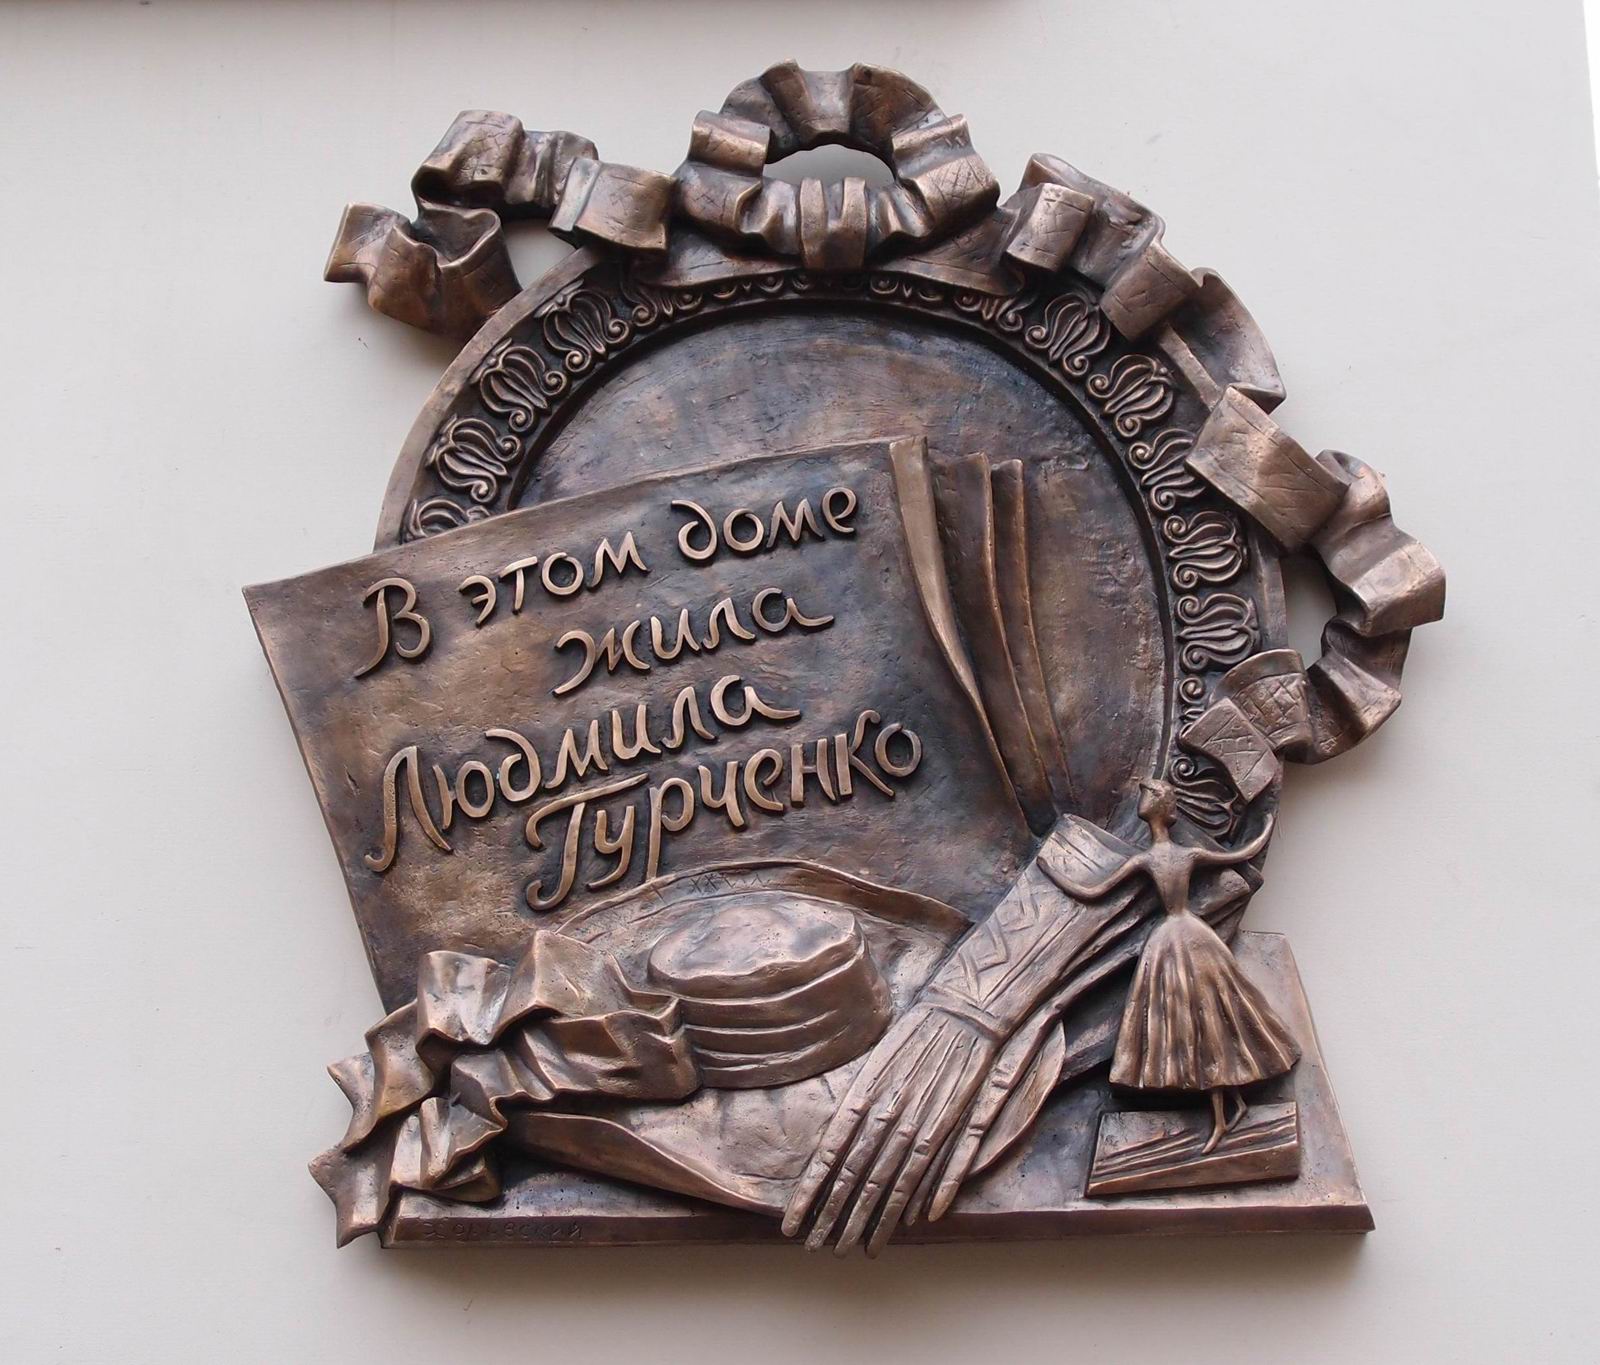 Мемориальная доска Гурченко Л.М. (1935–2011), ск. Ю.А.Хоровский, в Трёхпрудном переулке, дом 11/13, открыта 11.11.2015.